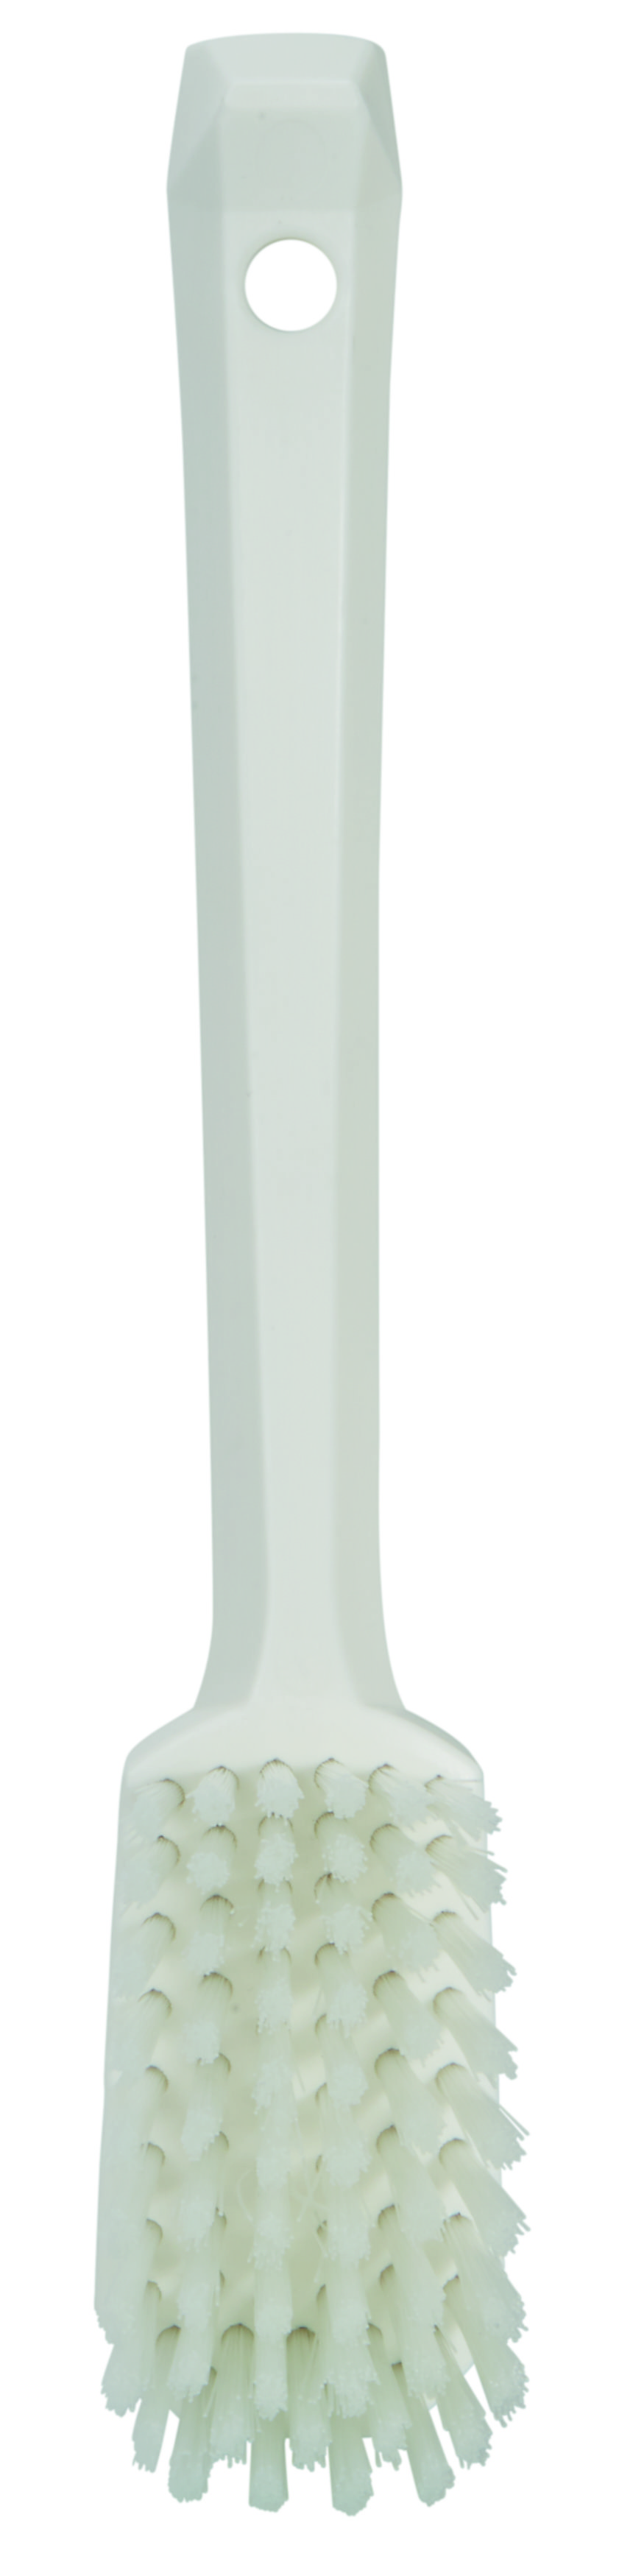 Щетка Vikan универсальная с изогнутой ручкой, 260 мм, средняя жесткость, белая